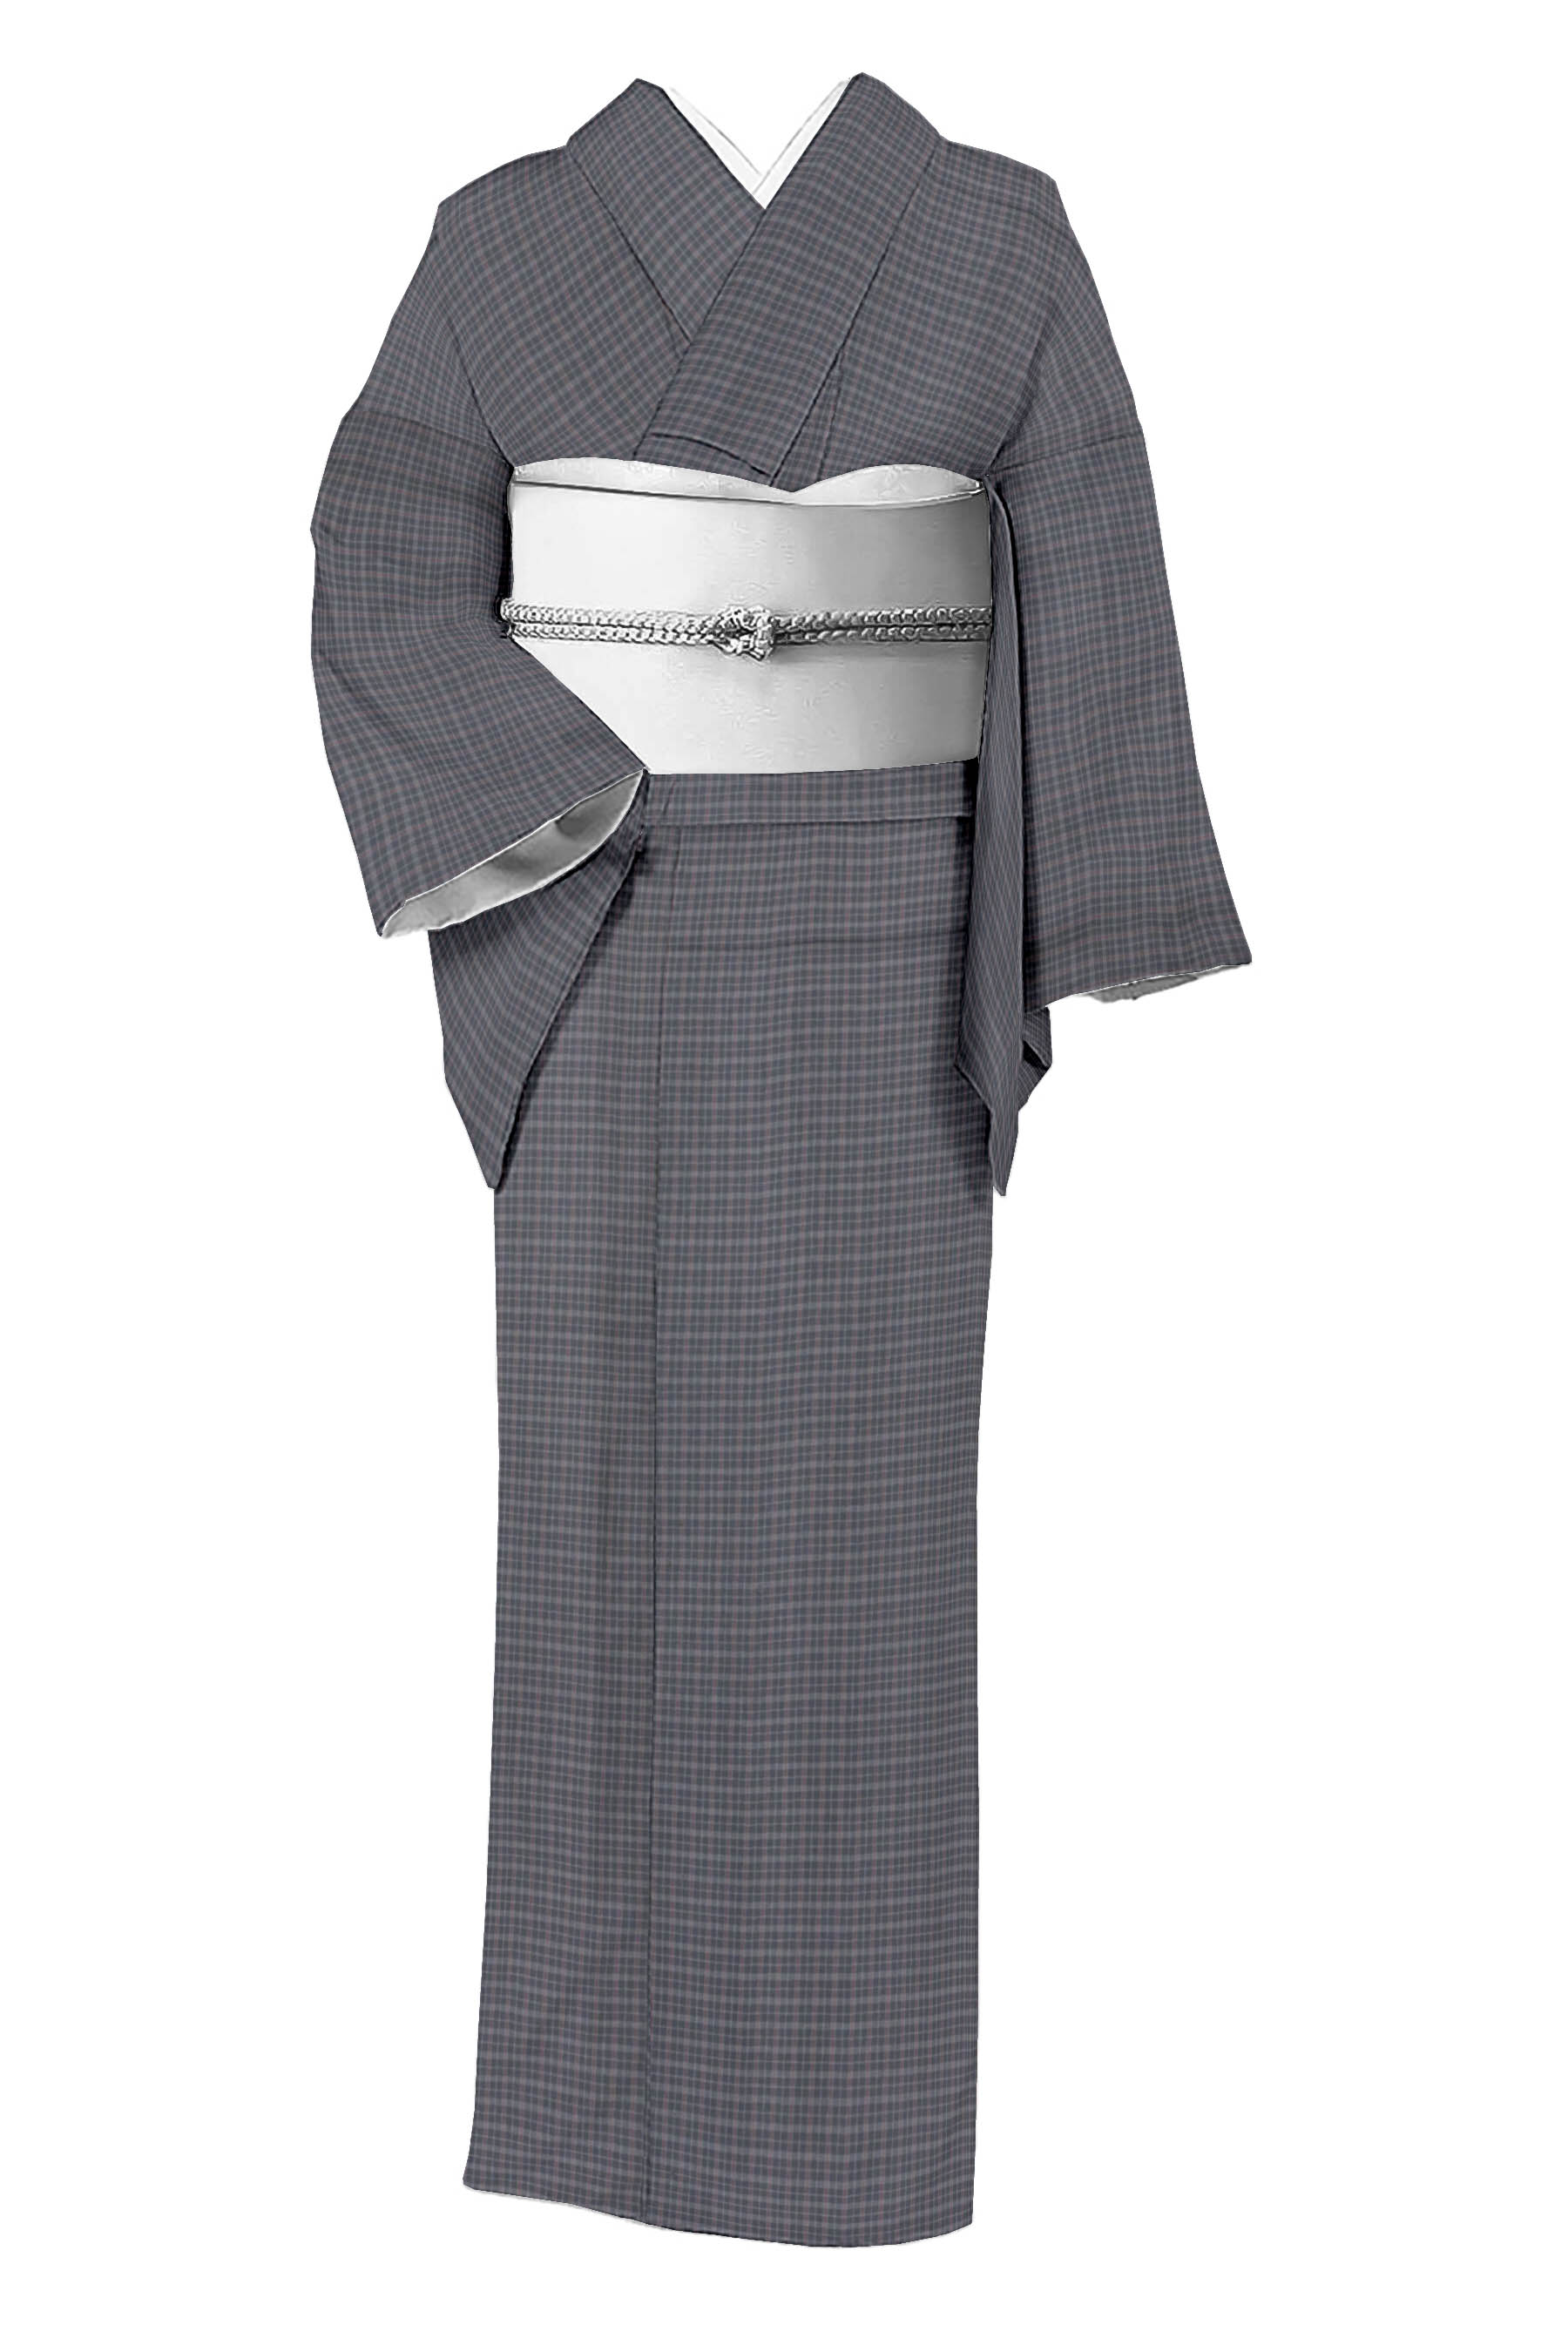 京有栖着物のお仕立て承ります☆高級手縫いお誂え661 - 女性和服、着物